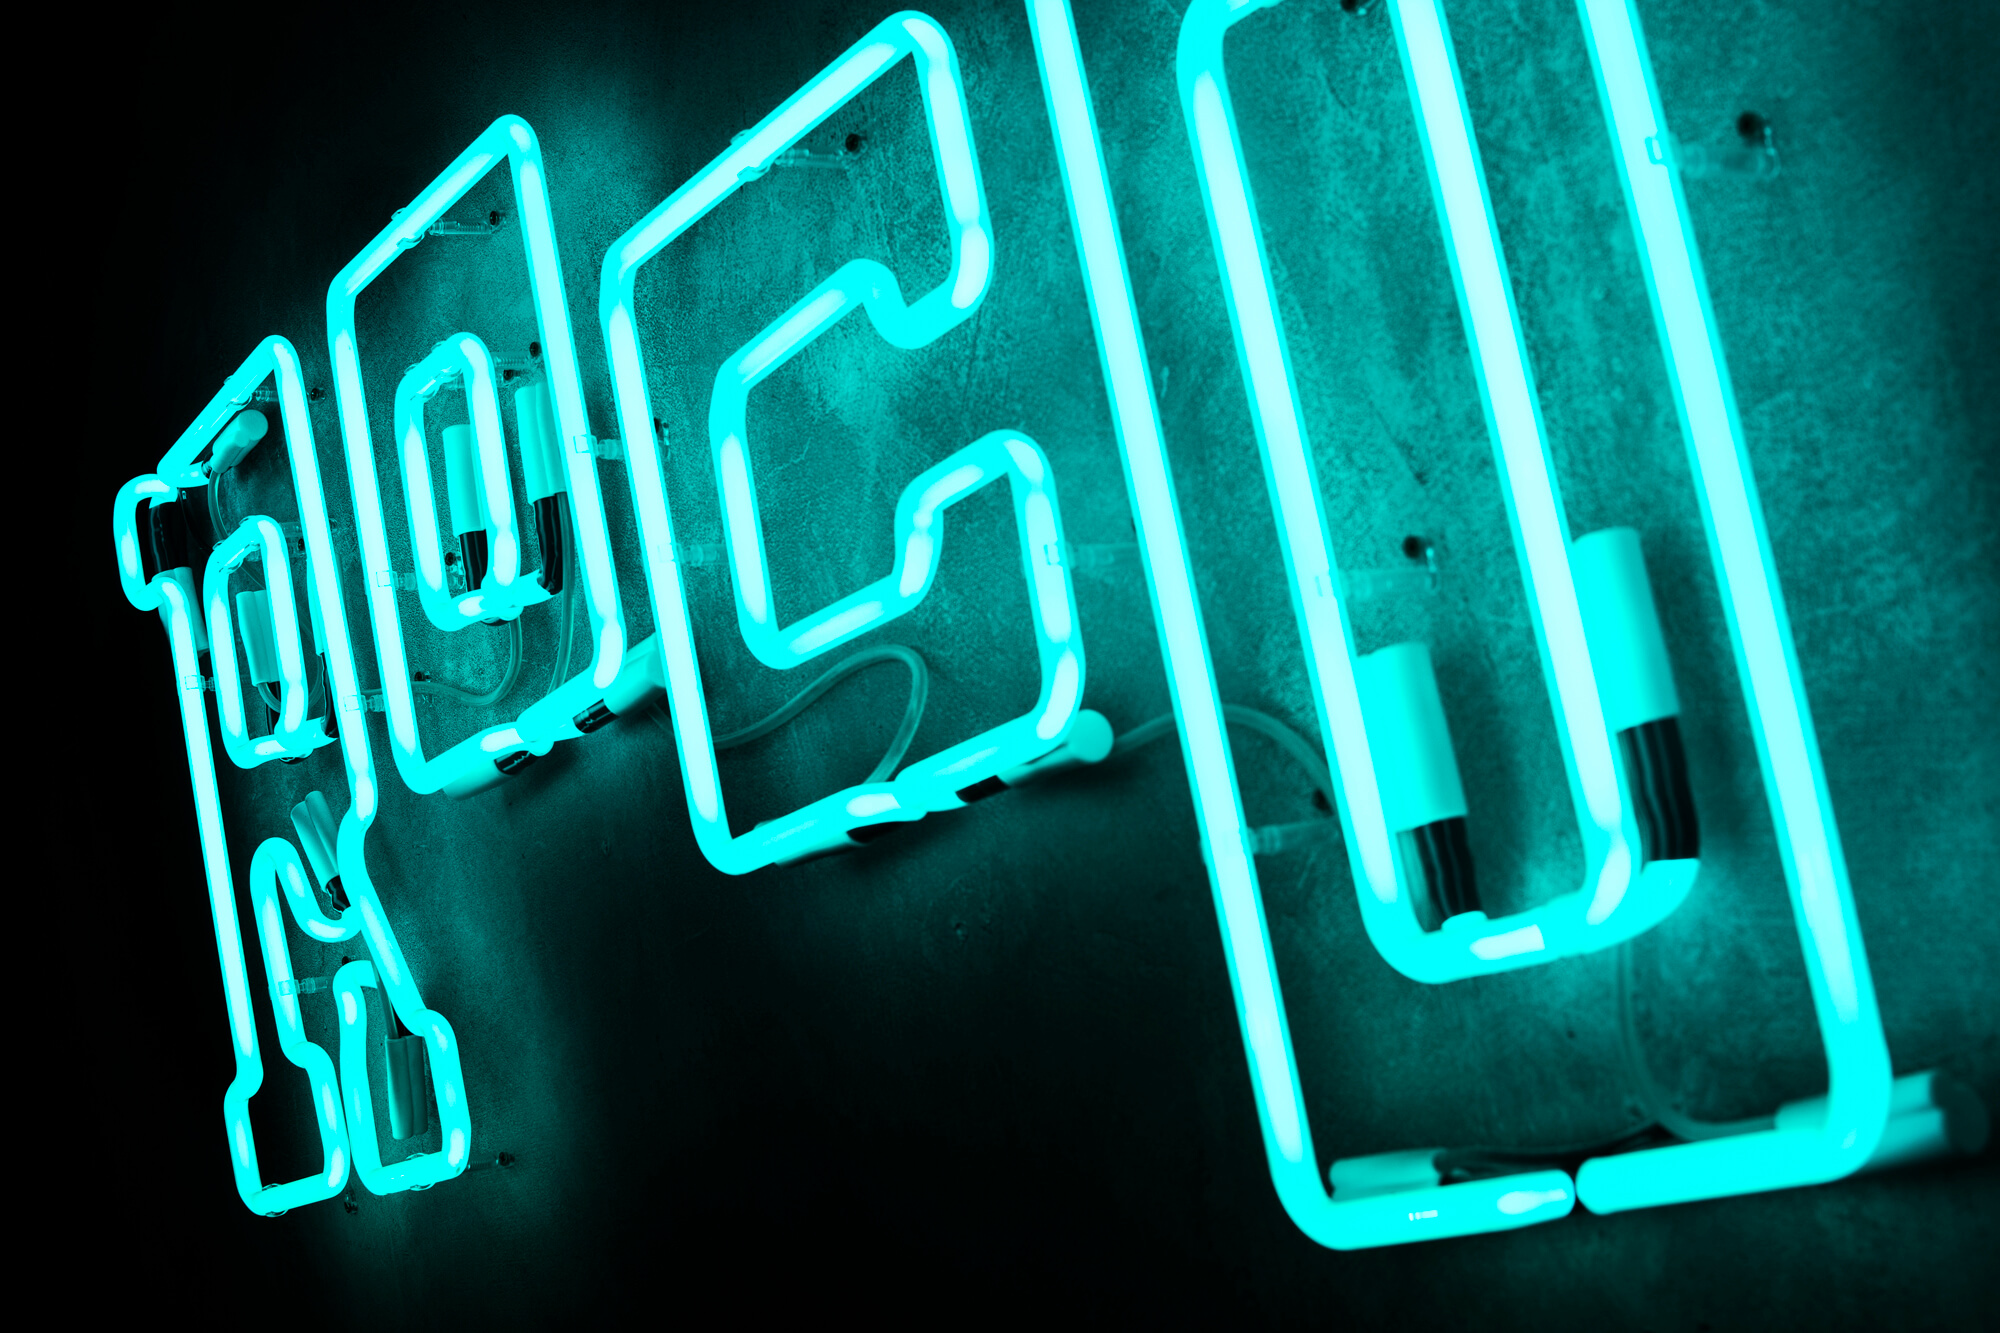 Rocotillo rokotilo rocotilo - neon-rocotillo-neon-na-scianie-wewnatrz-restauracji-neon-mocowany-do-sciany-neon-nad-stolami-neon-podswietlany-neon-na-sciane-betonowej-neon-szklany-napis-neonowy-logo-sign